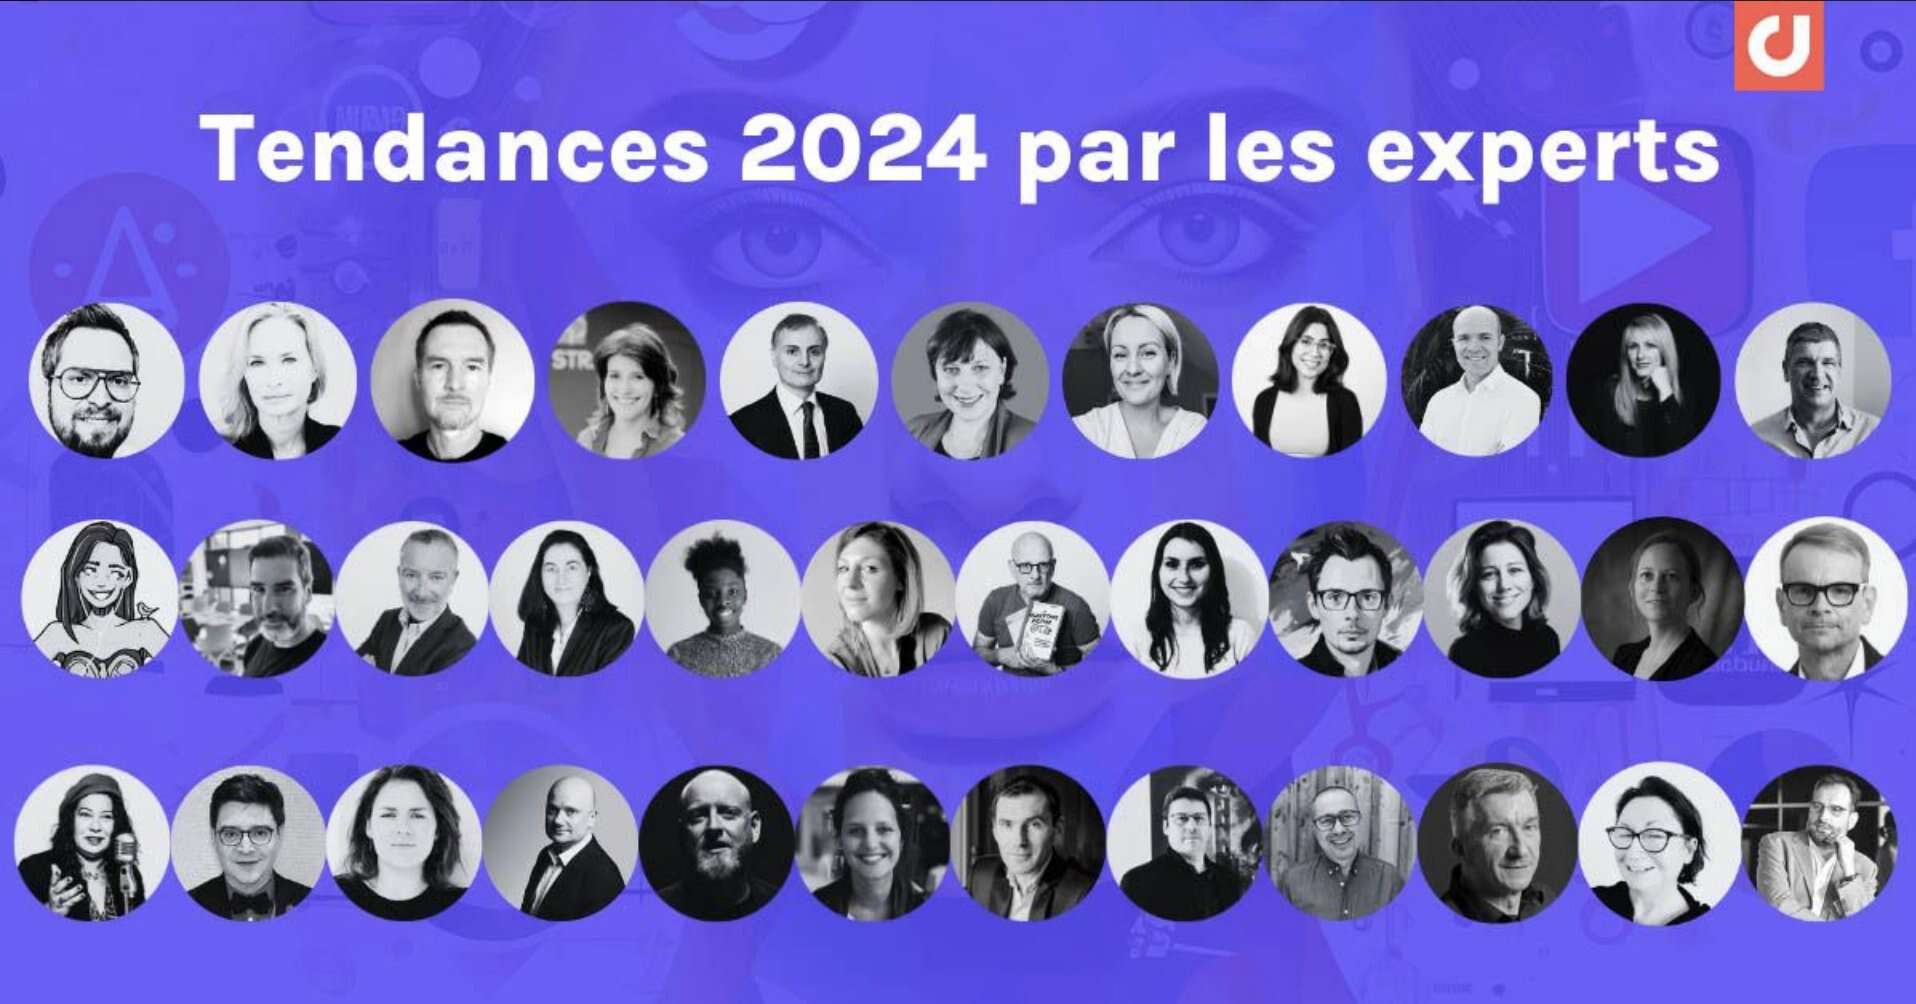 Image illustrant les visages de tous les contributeurs du guide marketing digital et social media et les tendances 2024, sur fond violet.